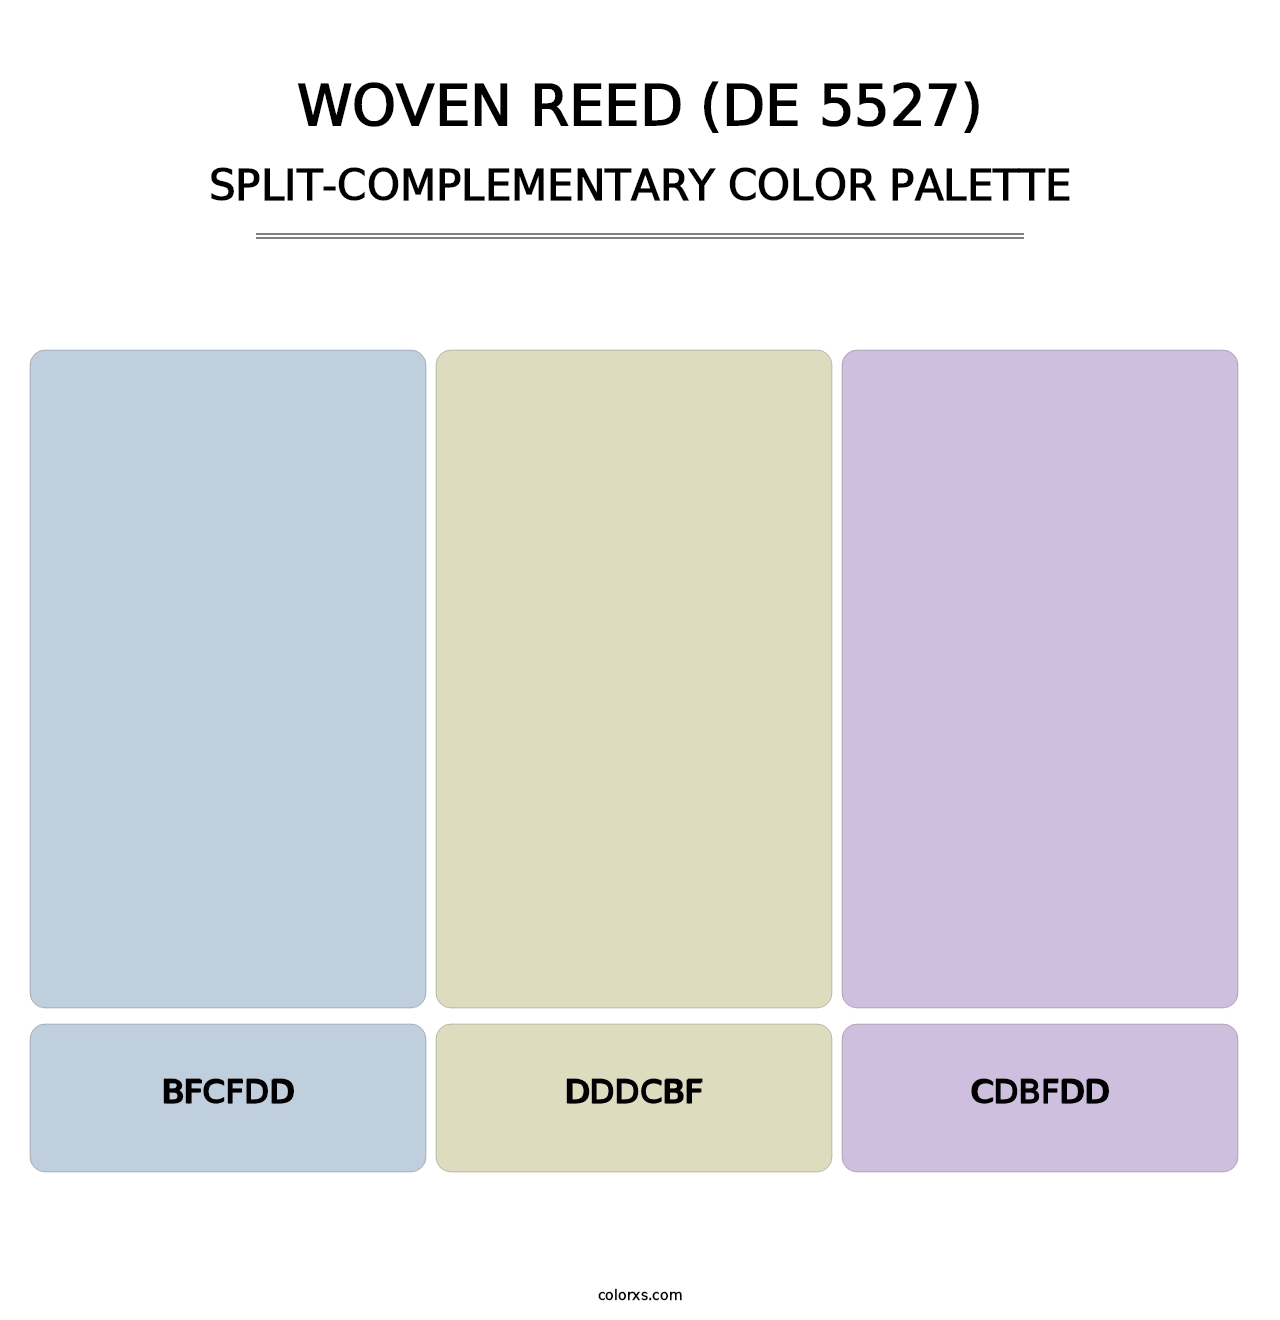 Woven Reed (DE 5527) - Split-Complementary Color Palette